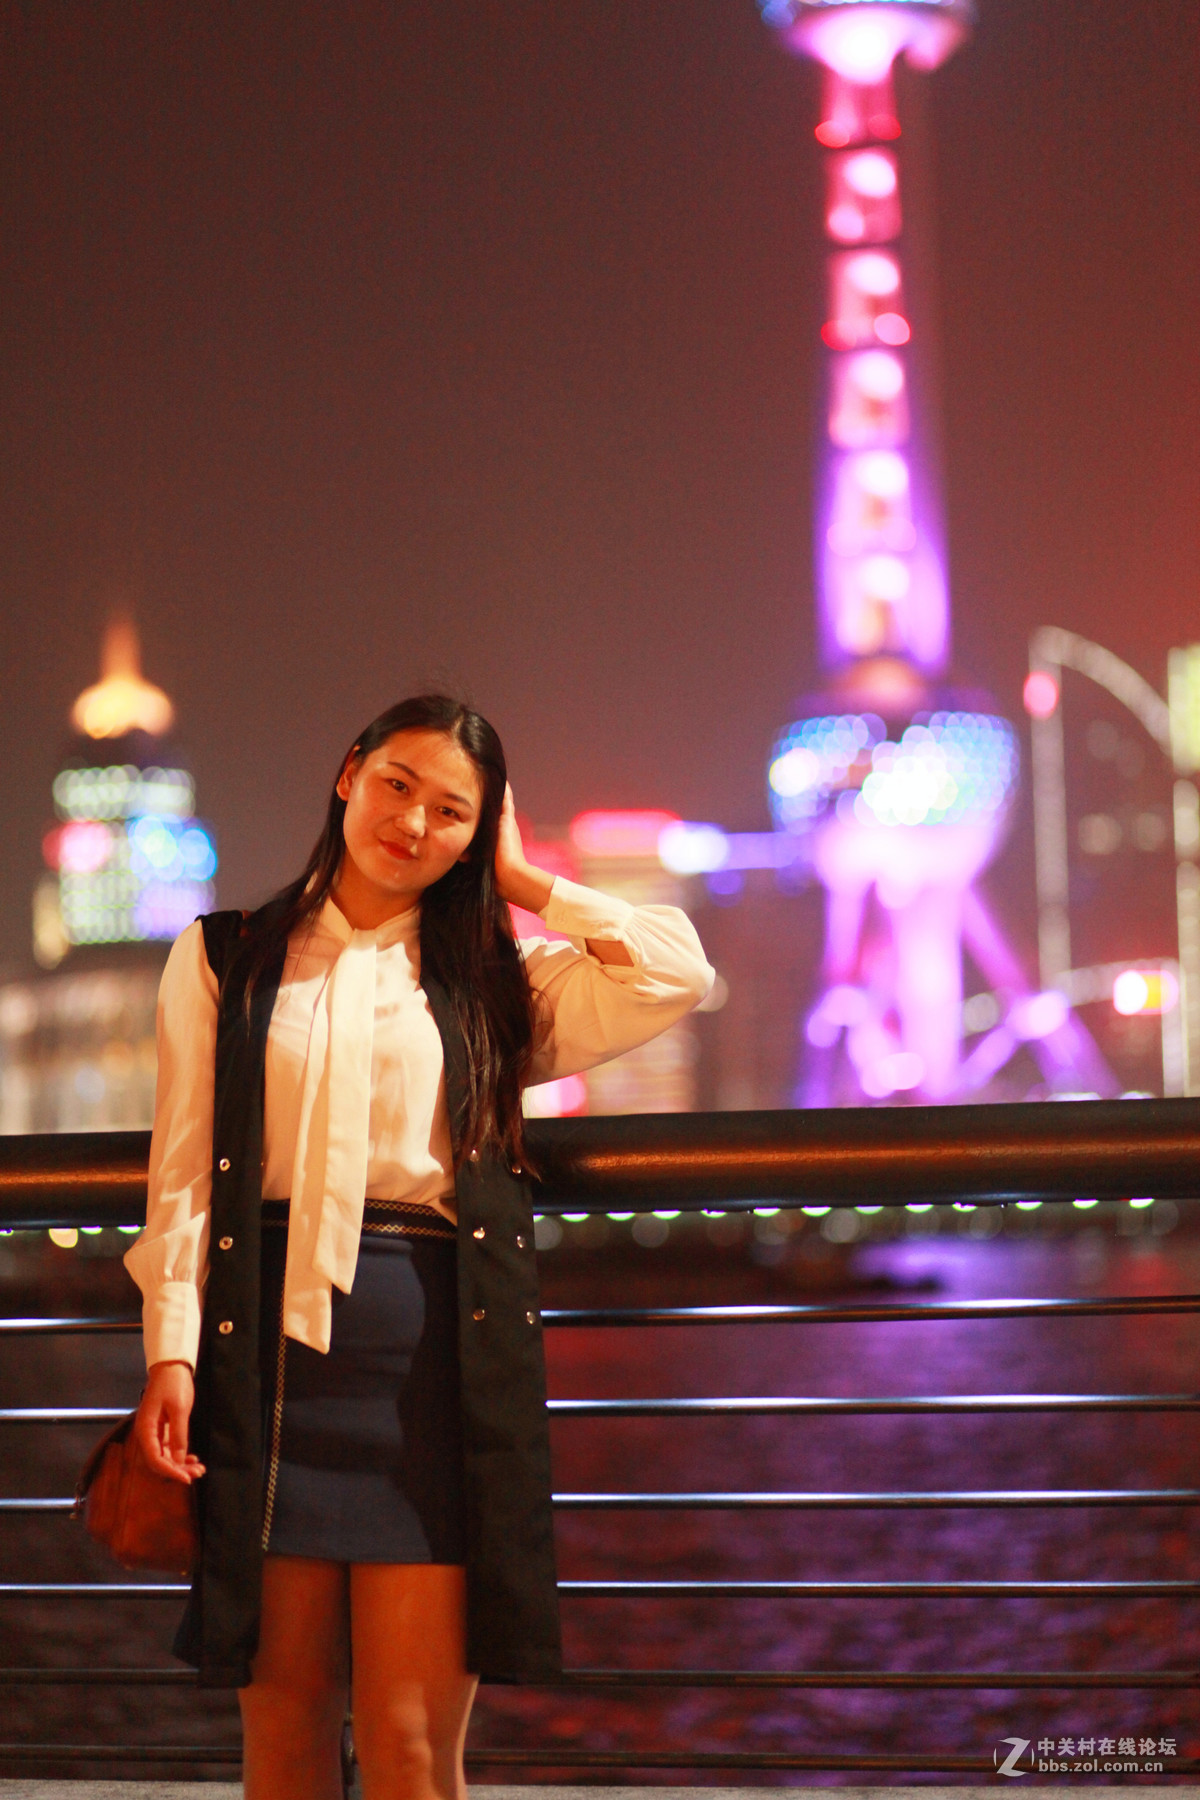 上海外滩夜景美女图片